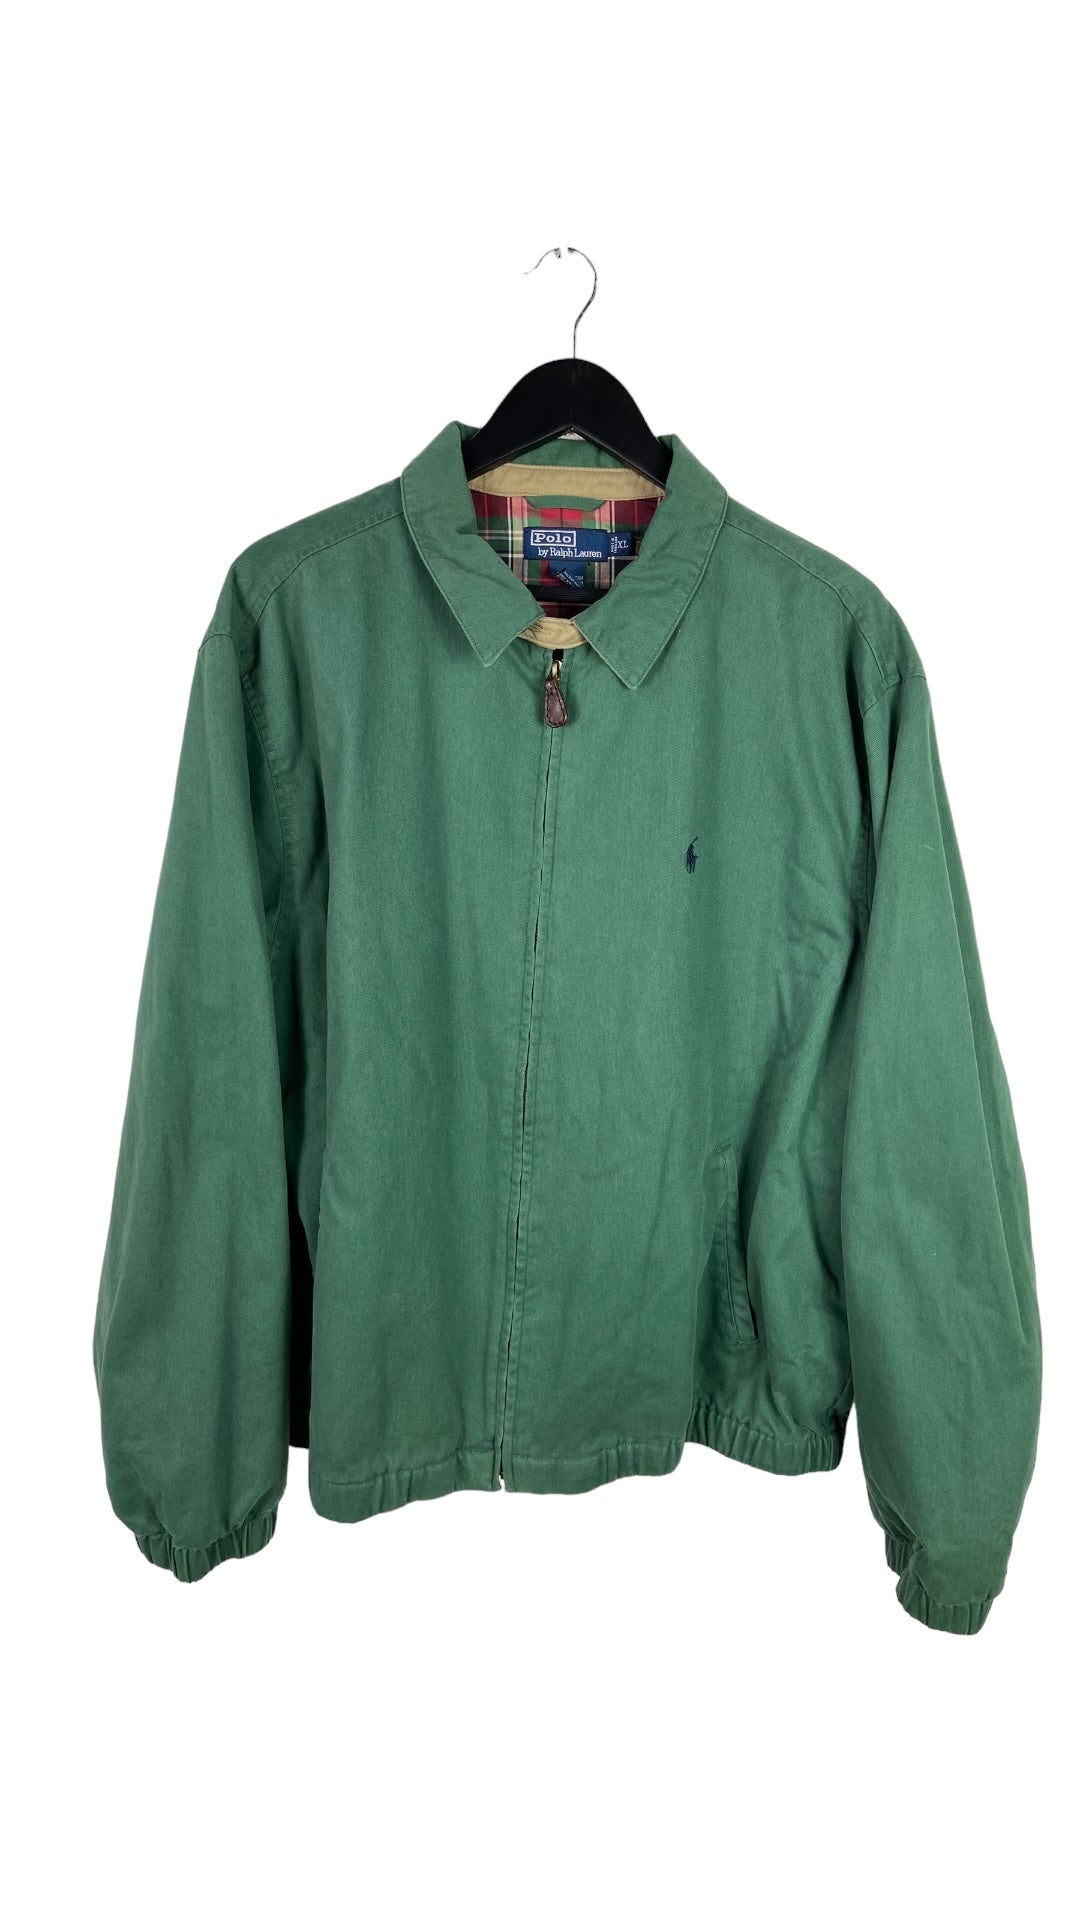 Polo Ralph Lauren Green Jacket Sz XL